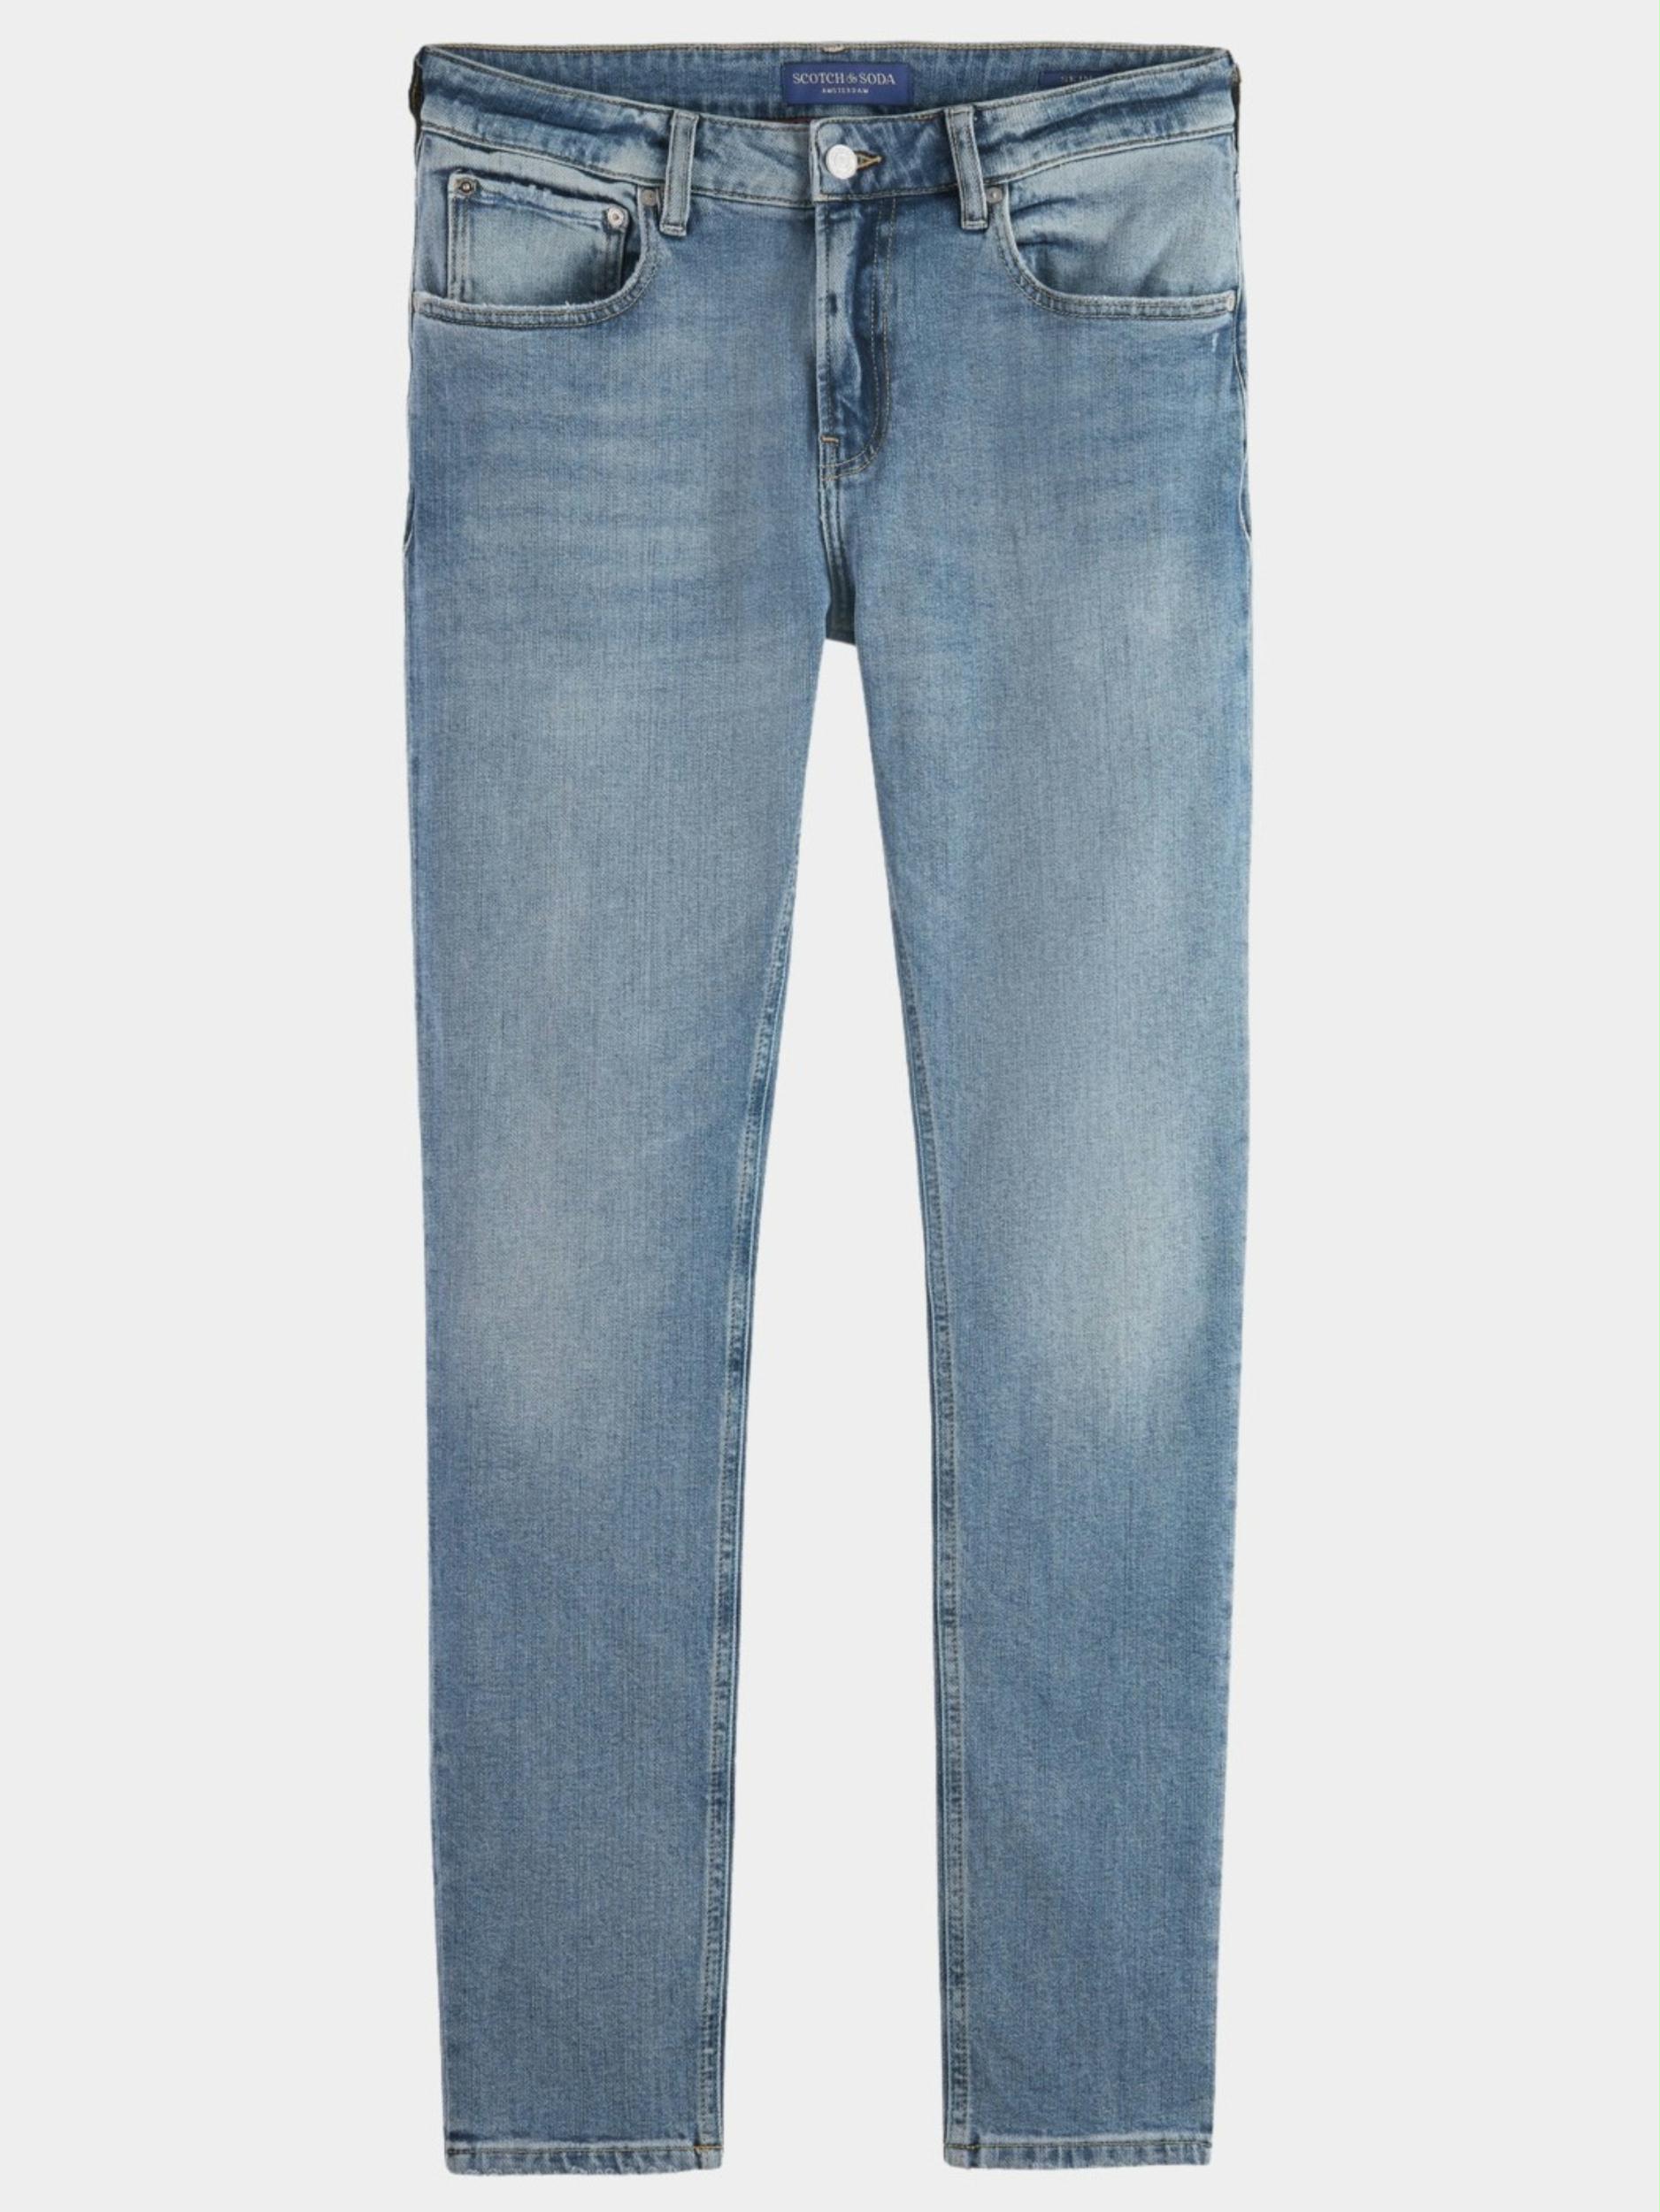 Scotch & Soda 5-Pocket Jeans Blauw Skim skinny jeans 172153/5767